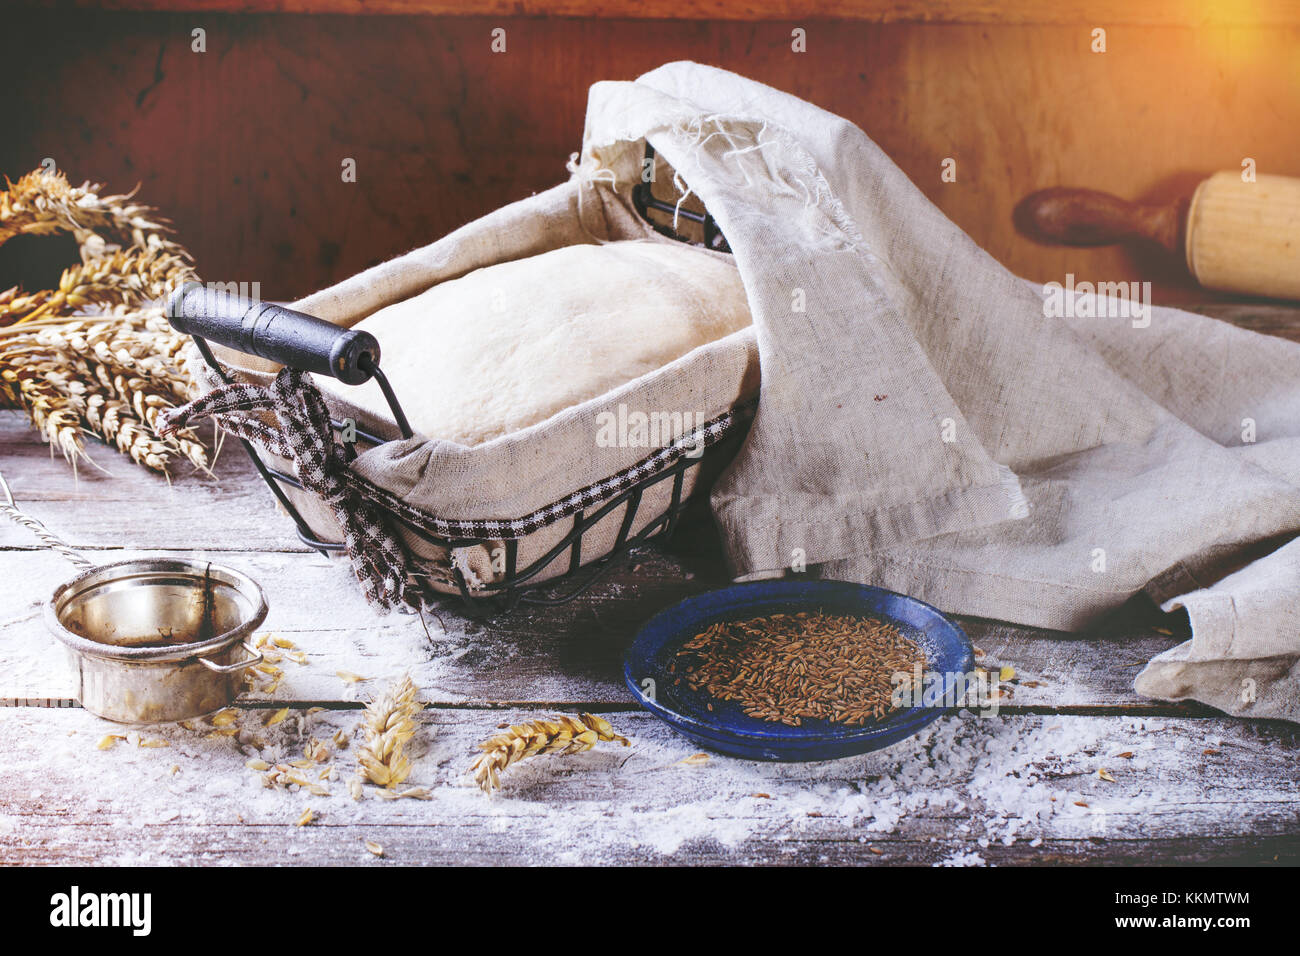 Brot backen. Teig in proofing Warenkorb auf hölzernen Tisch mit Mehl, Kümmel und Weizen Ohren. In retro Filter Effekt Stockfoto